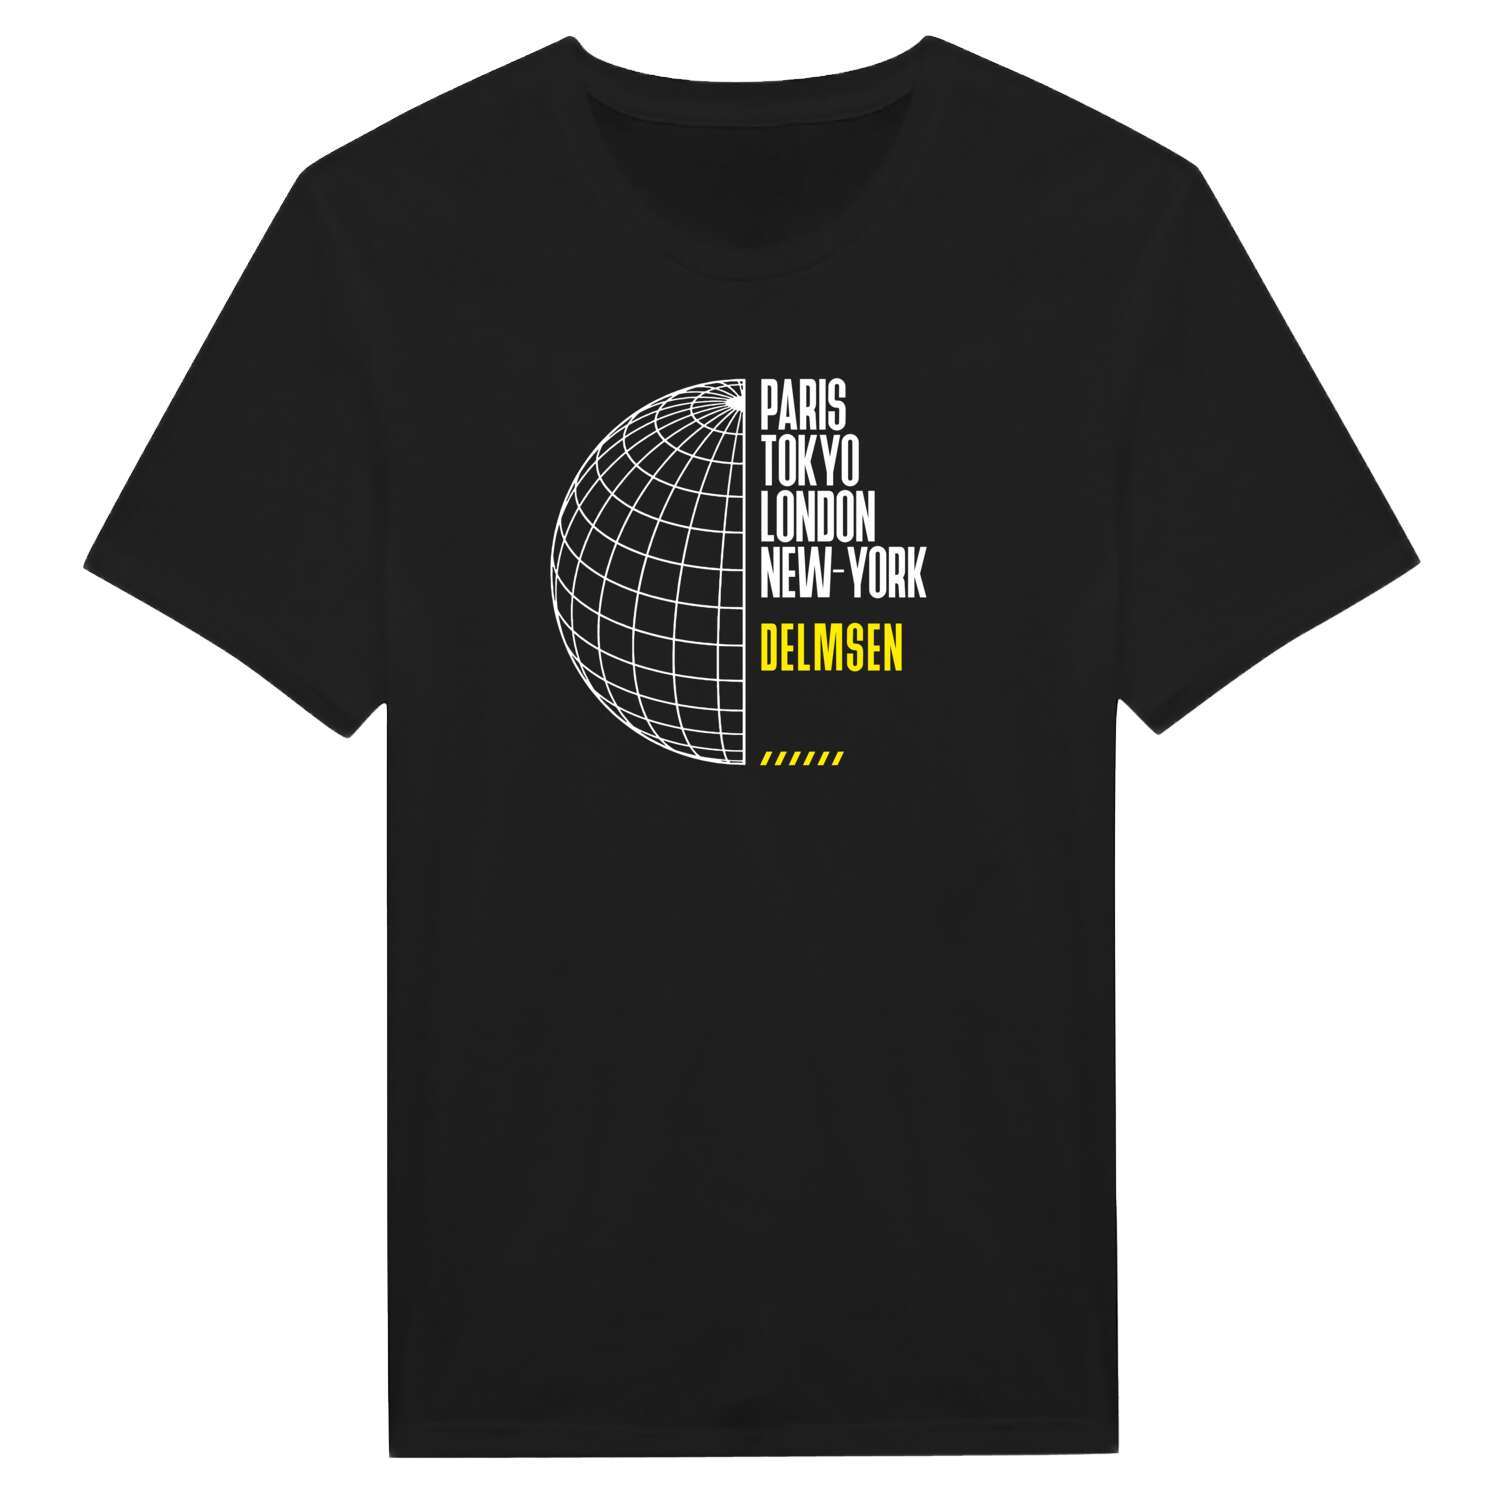 Delmsen T-Shirt »Paris Tokyo London«